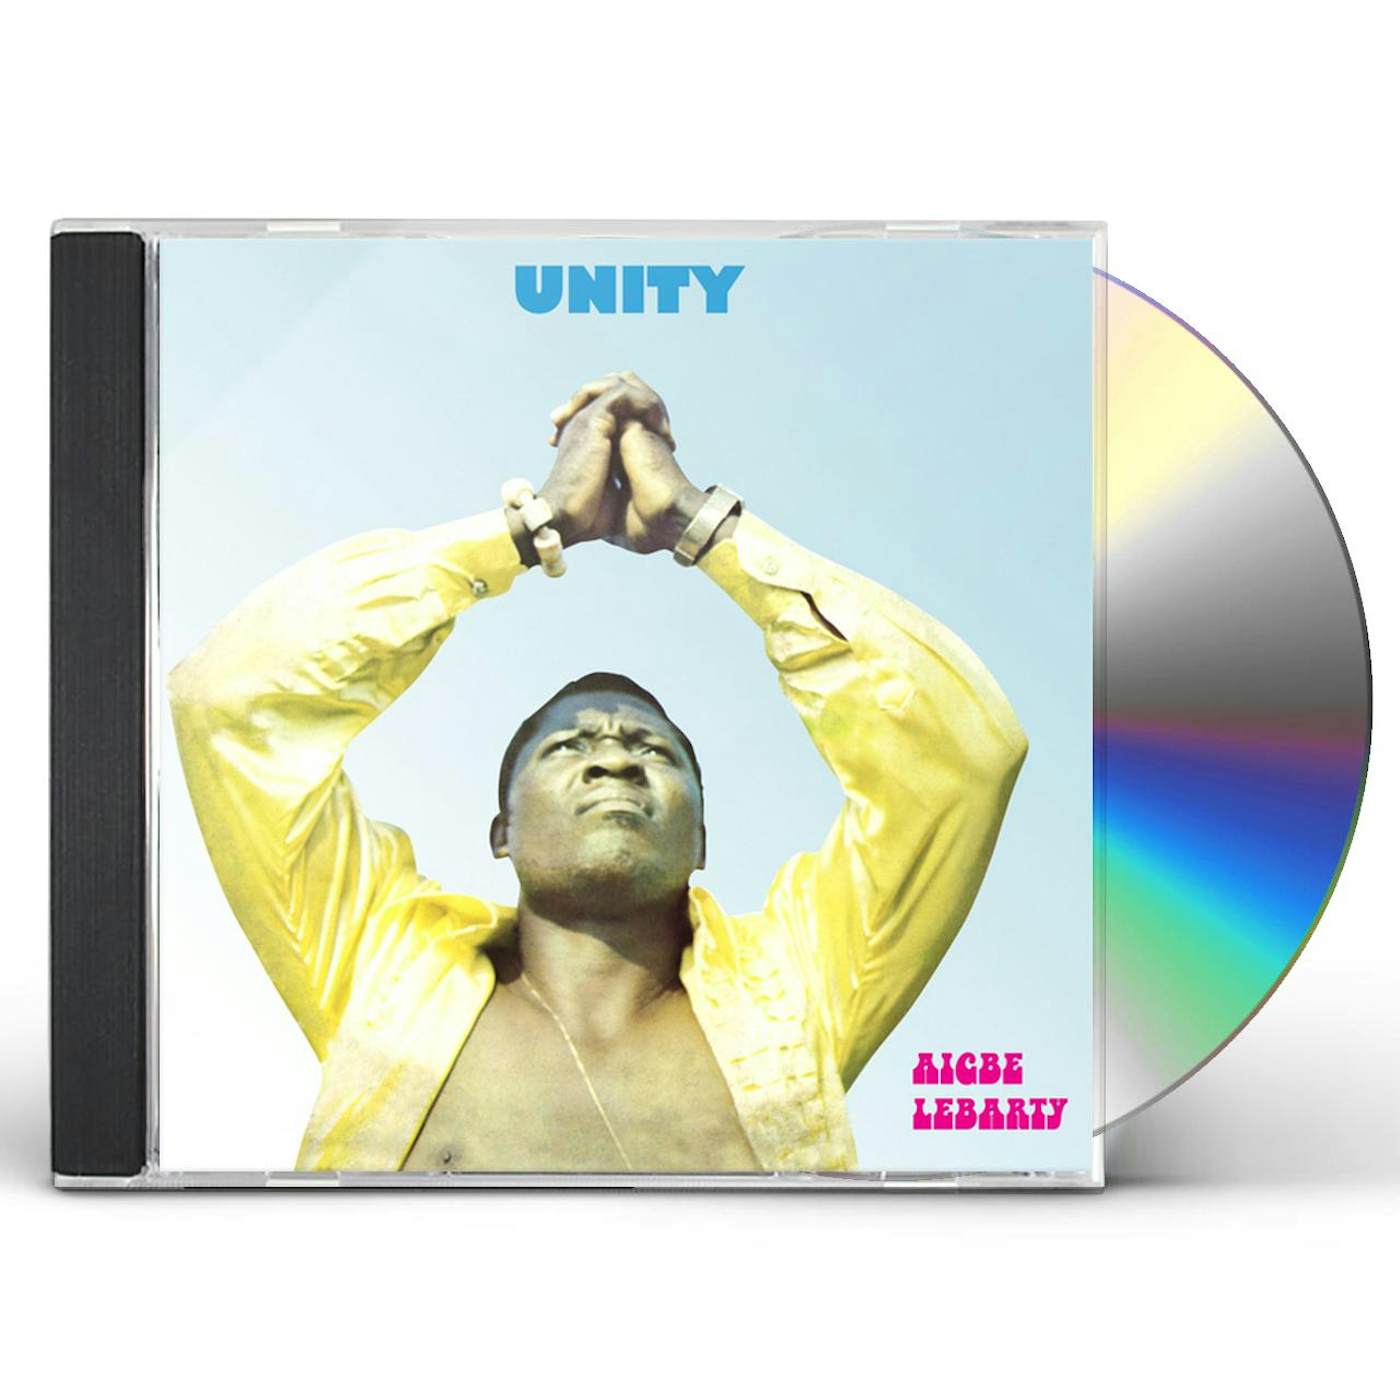 Aigbe Lebarty UNITY CD